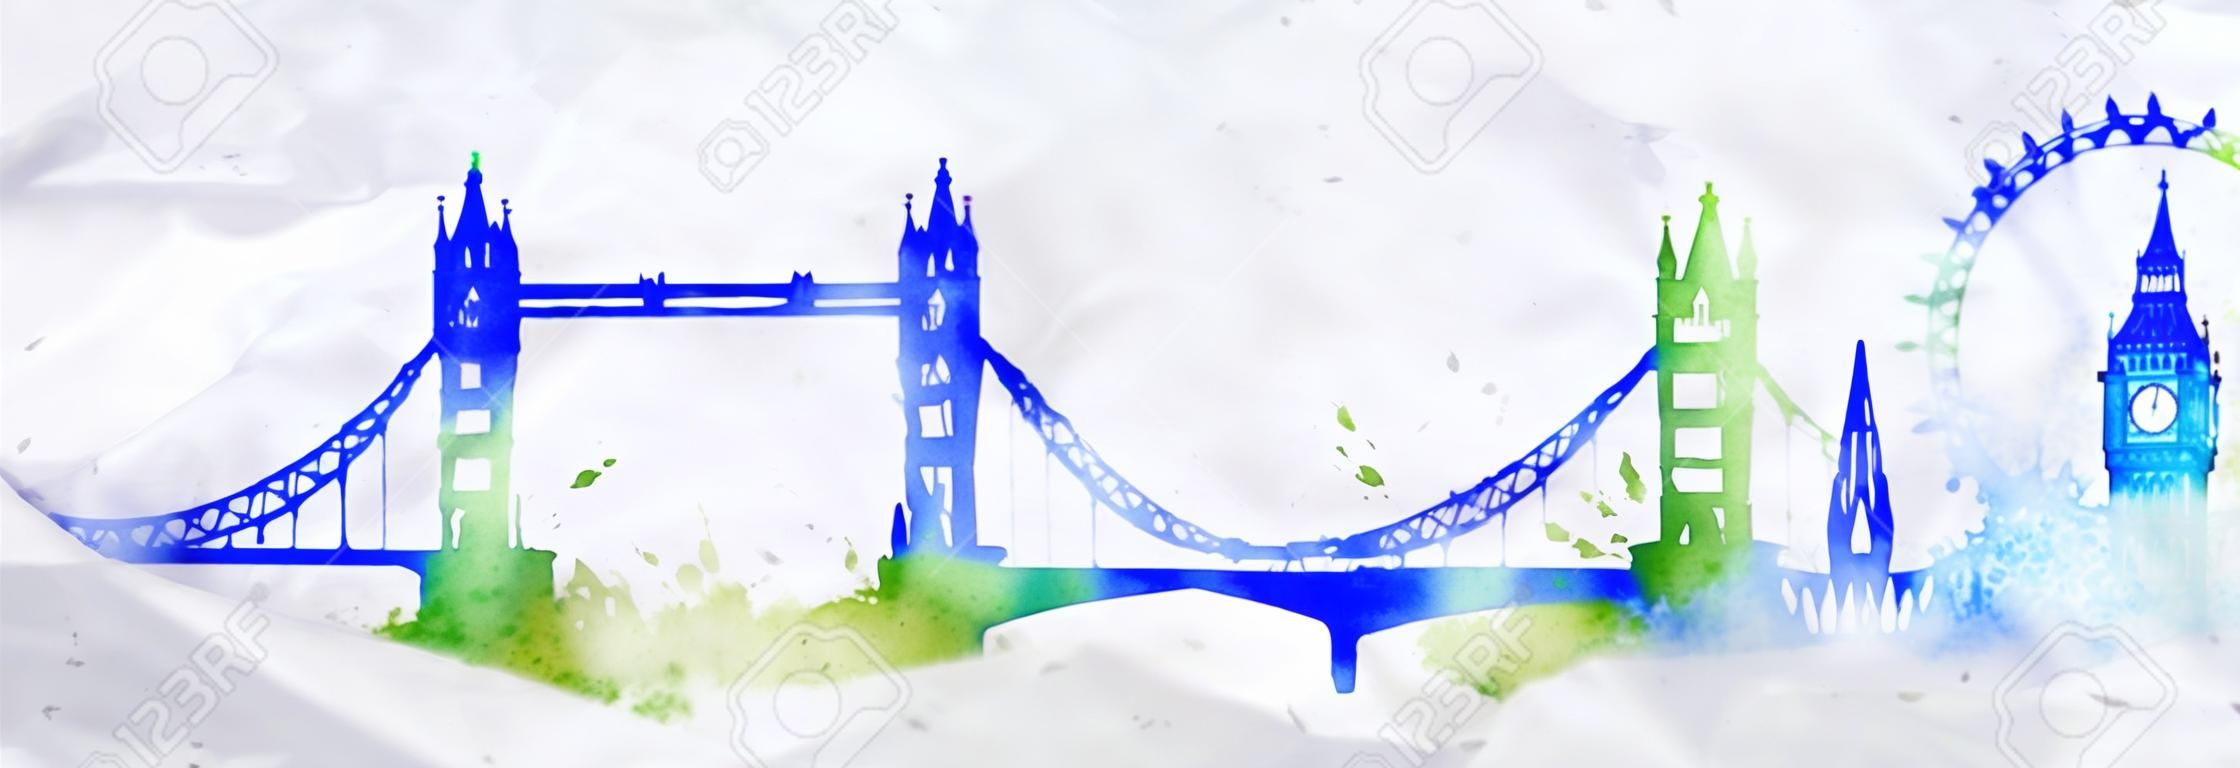 Sylweta miasta Londyn malowane plamy akwarela spada smugi zabytki z niebiesko-zielonych barwach